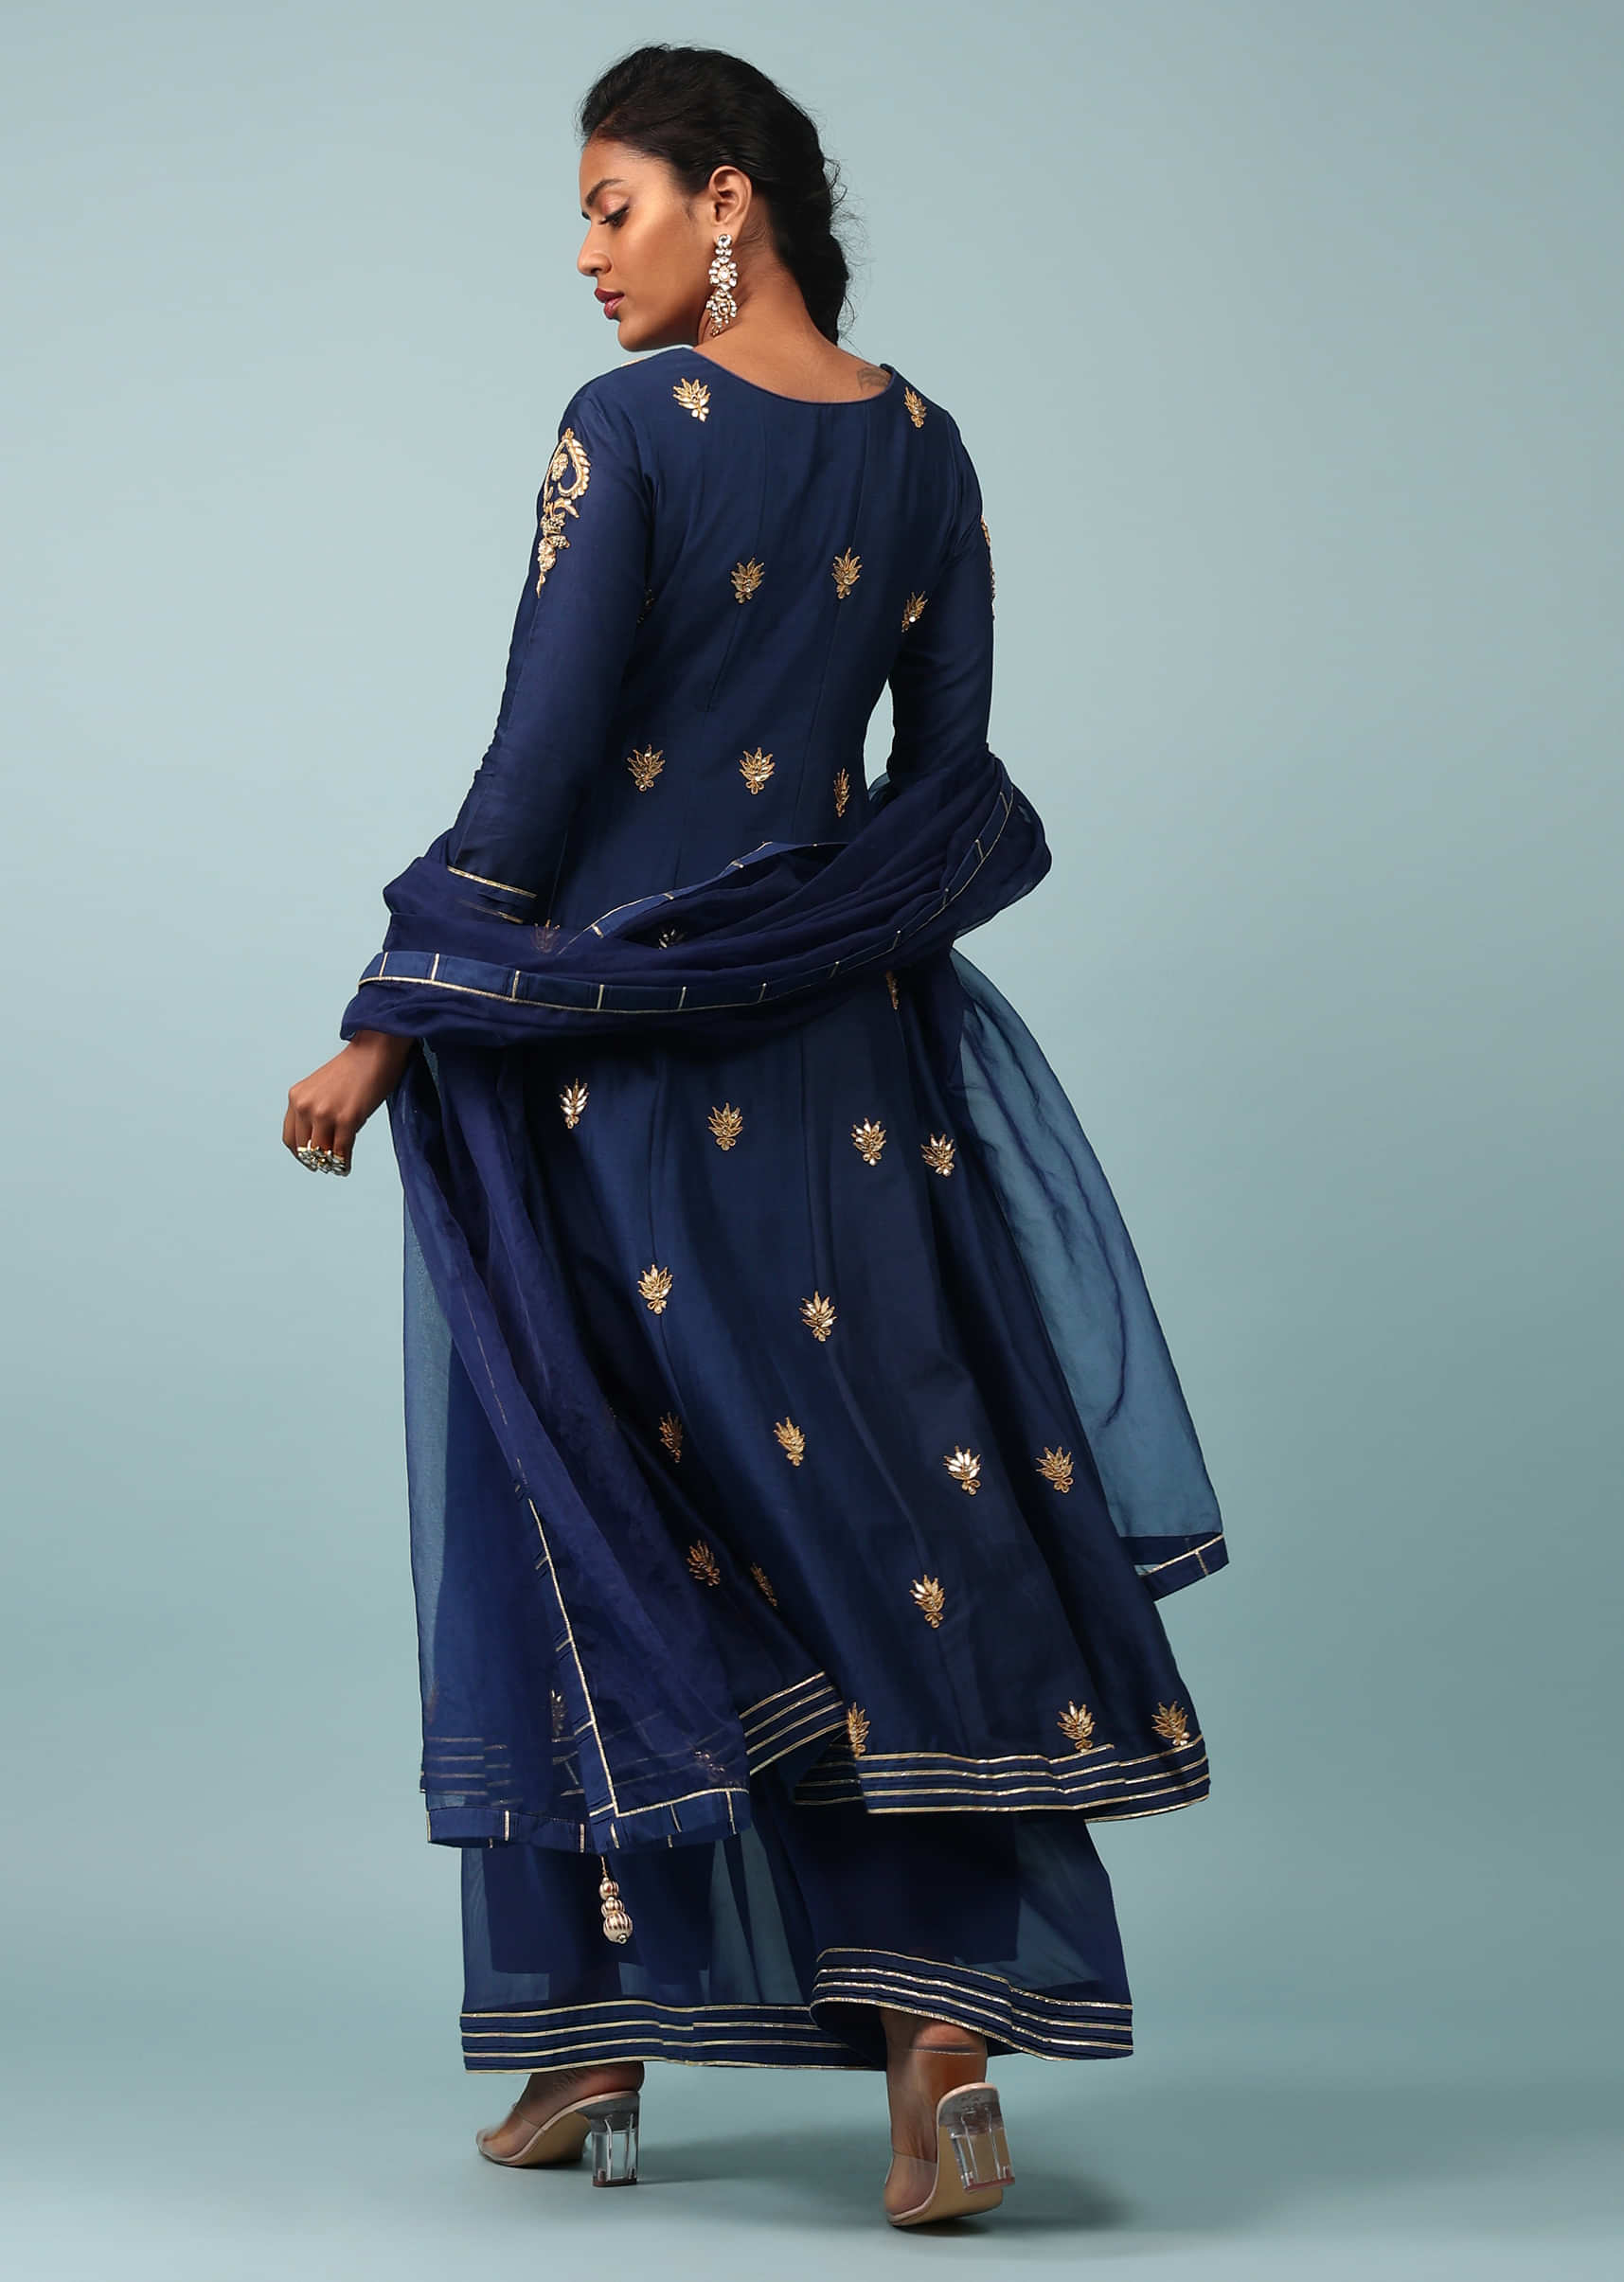 Buy Blue Cotton Embroidered Churidar Designer Suit : 214414 - Salwar Kameez